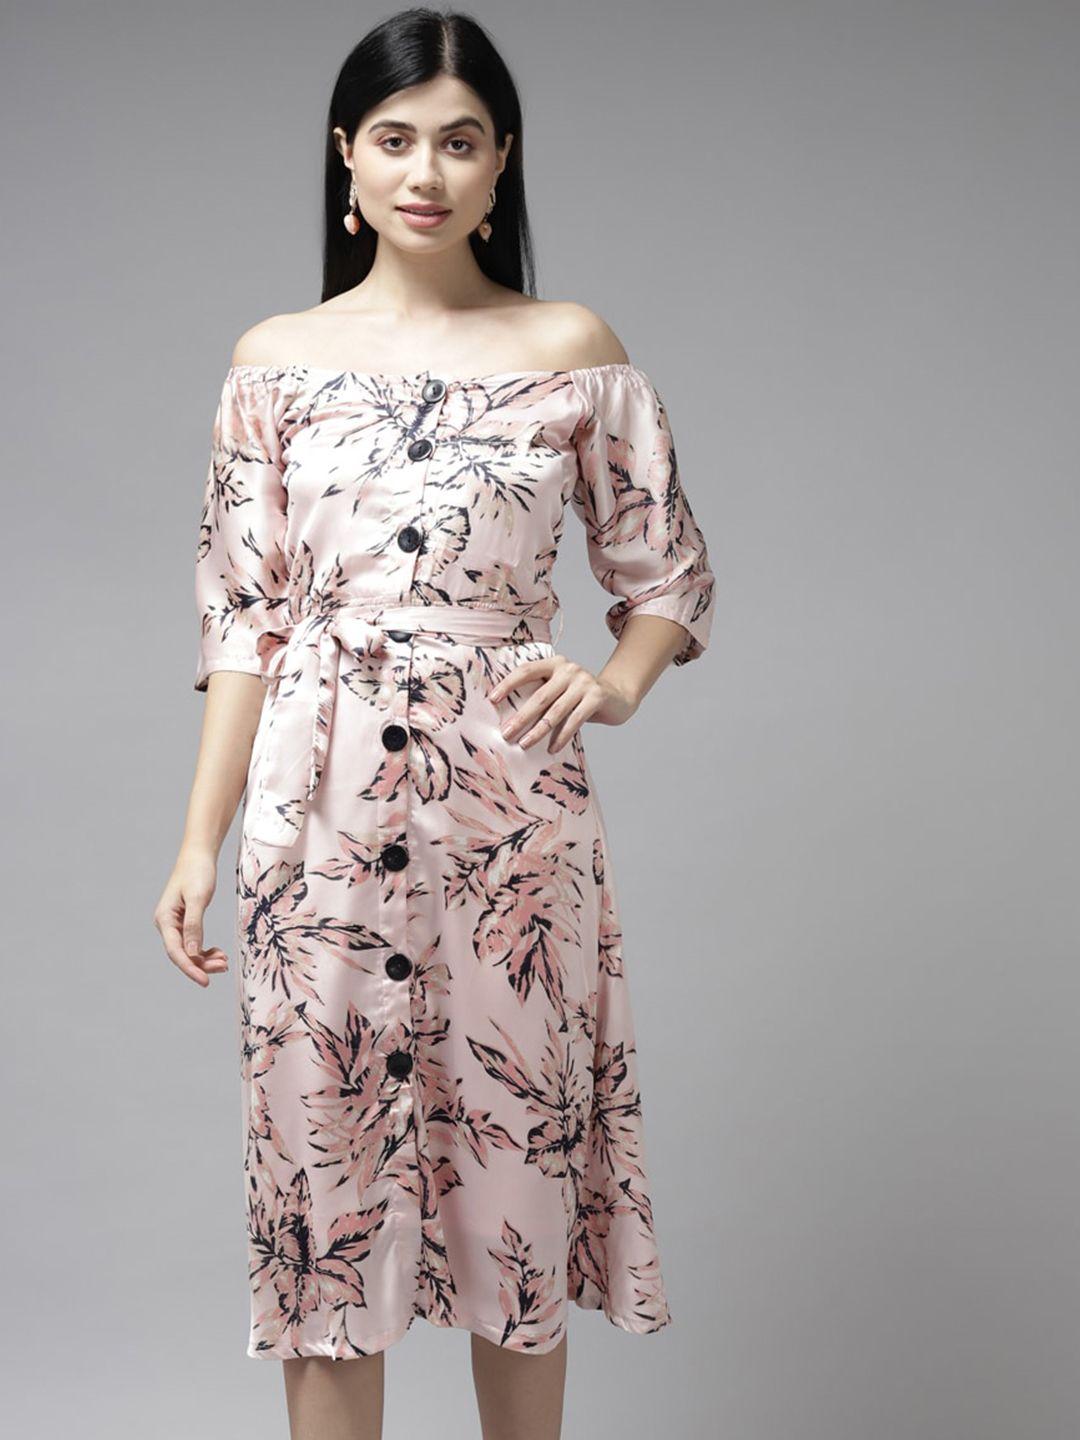 aarika floral printed off-shoulder georgette shirt style dress